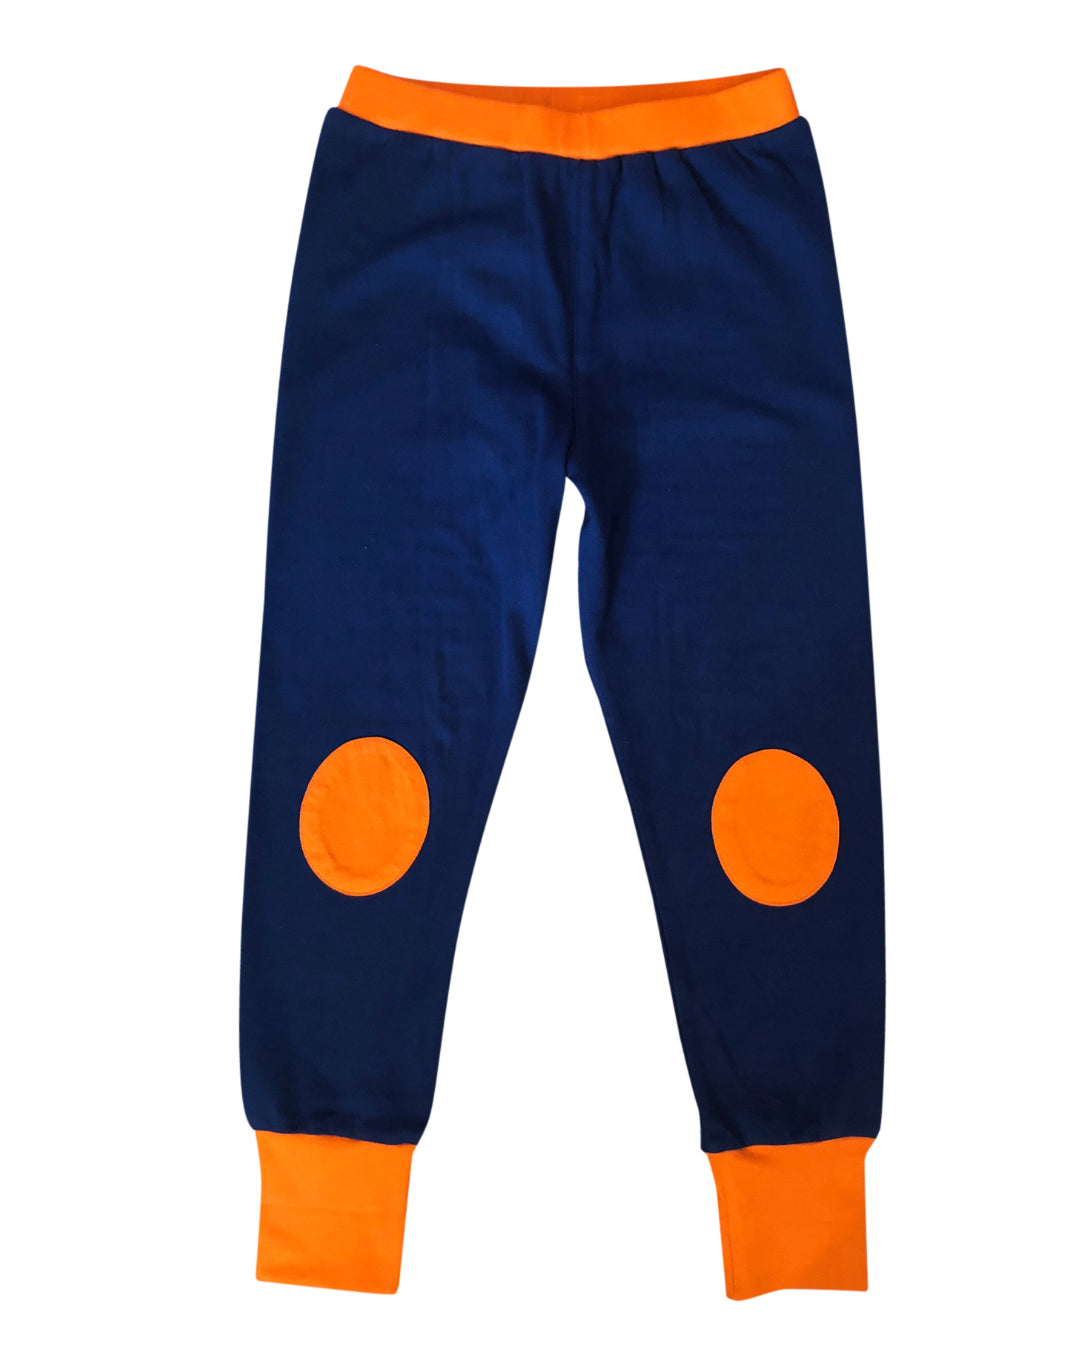 Hose aus Biobaumwolle in dunkelblau mit Bund an Beinabschluss und Bauch in orange  von moromini